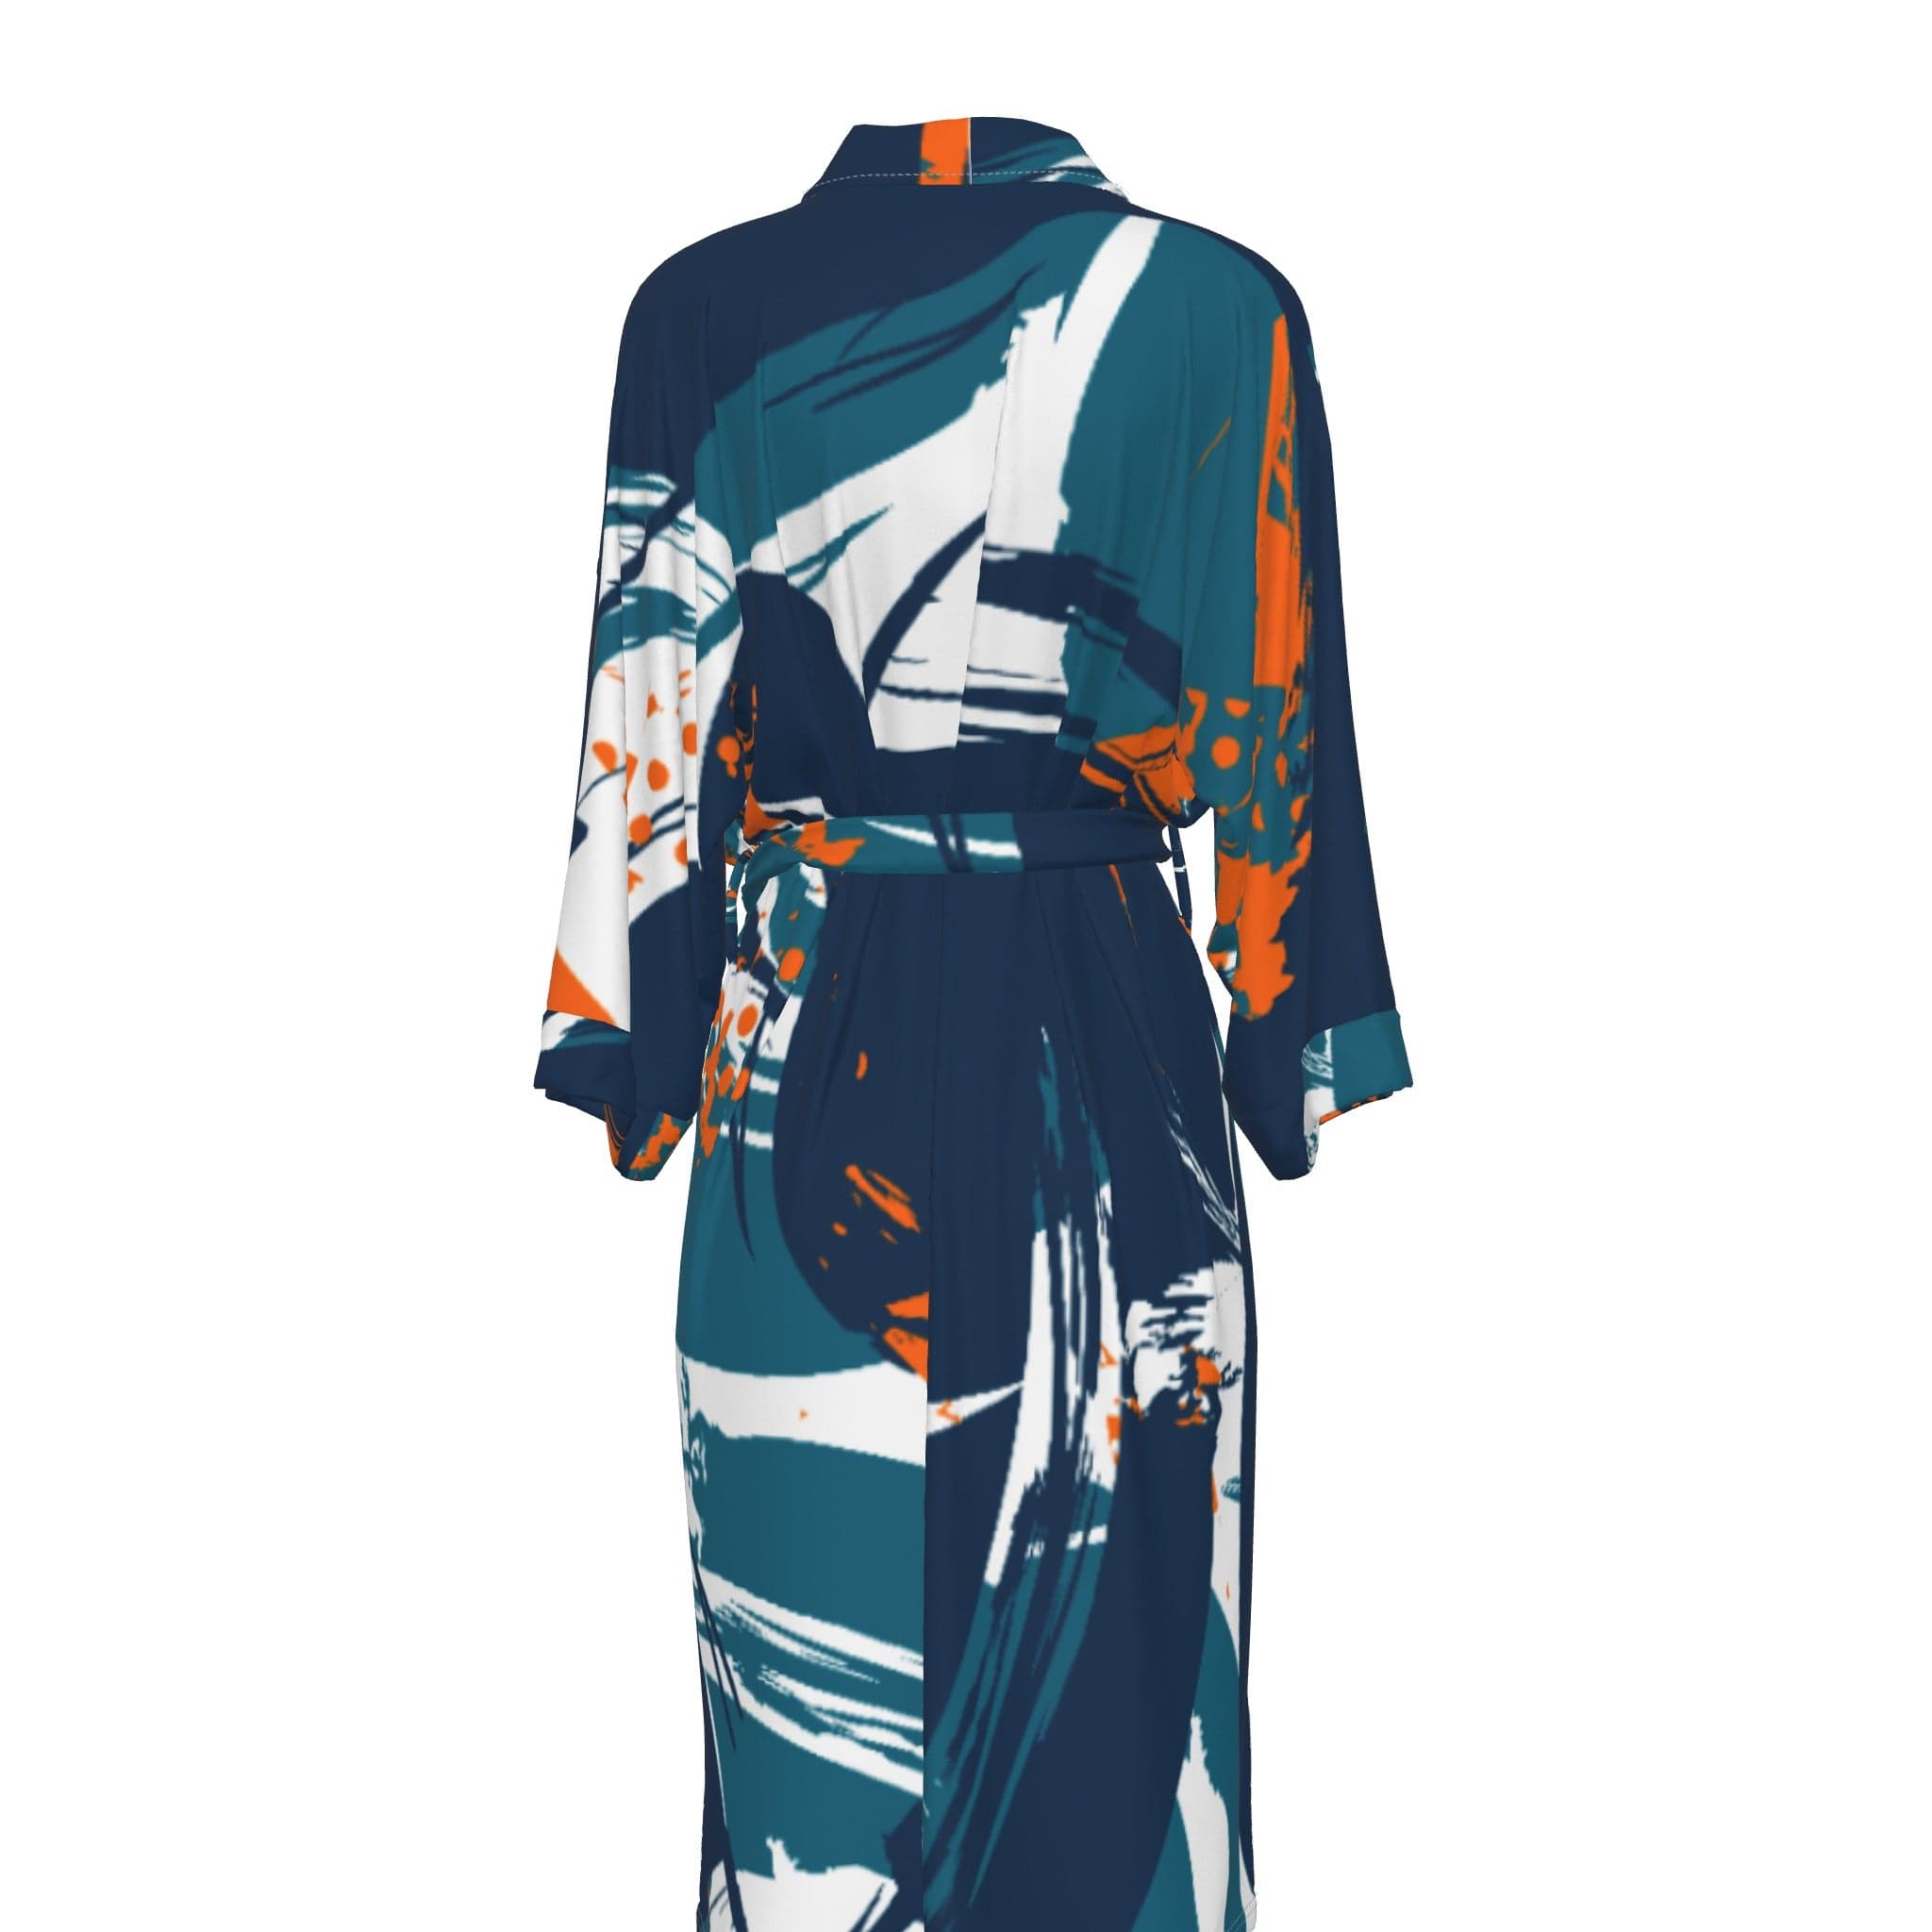 Yoycol All-Over Print Women's Satin Kimono Robe